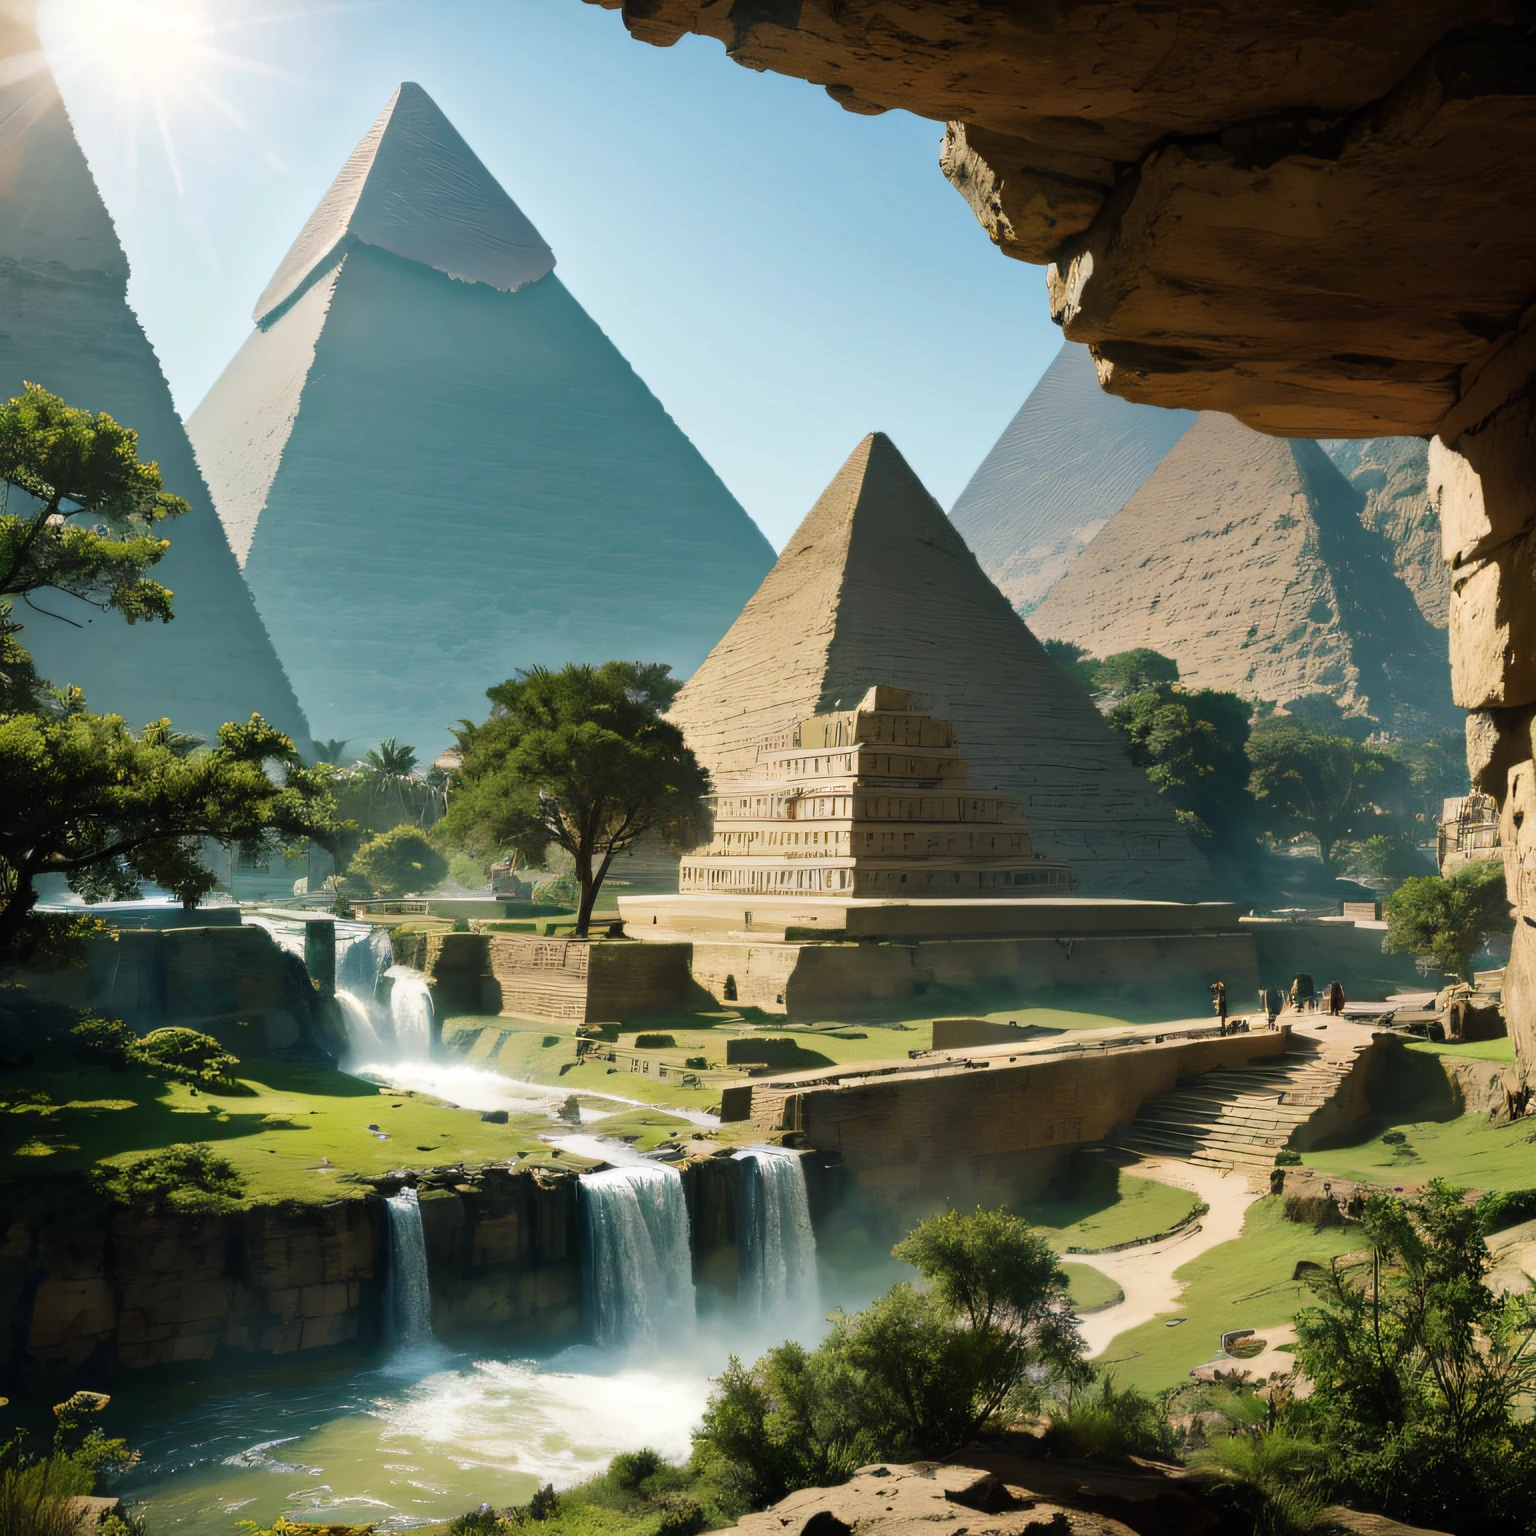 (D&#39;immenses pyramides) Egypte, les monuments de l&#39;homme de pierre sortant d&#39;une montagne se trouvent dans la vallée ,dans un mélange de peinture d&#39;une cascade dans une forêt verte avec un rayon de soleil, cascades, profondeur incroyable, chef-d&#39;œuvre d&#39;art à couper le souffle, 16k, photo réaliste.